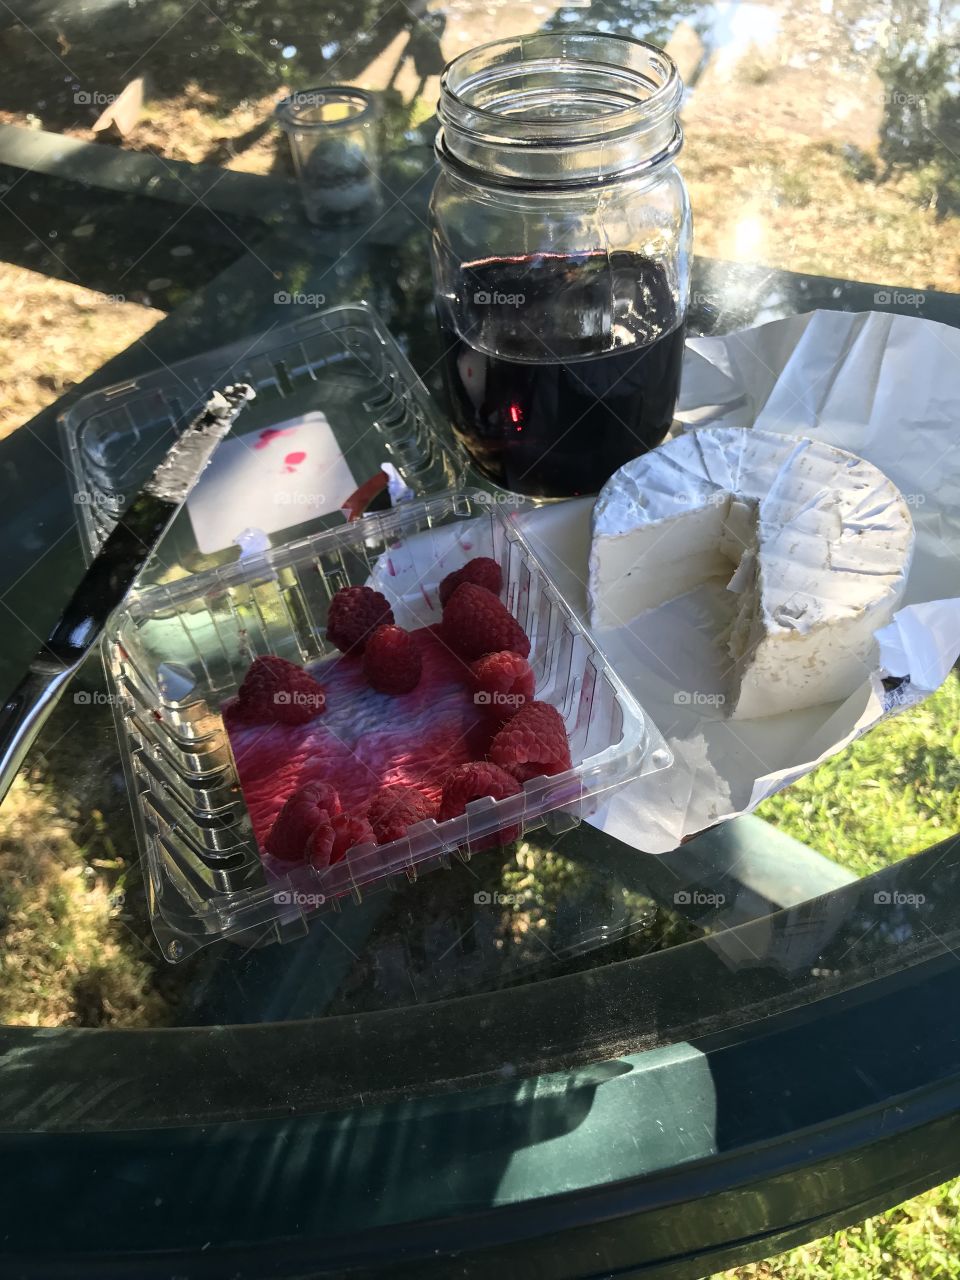 Simple dinner. Brie. Raspberries. Wine. 